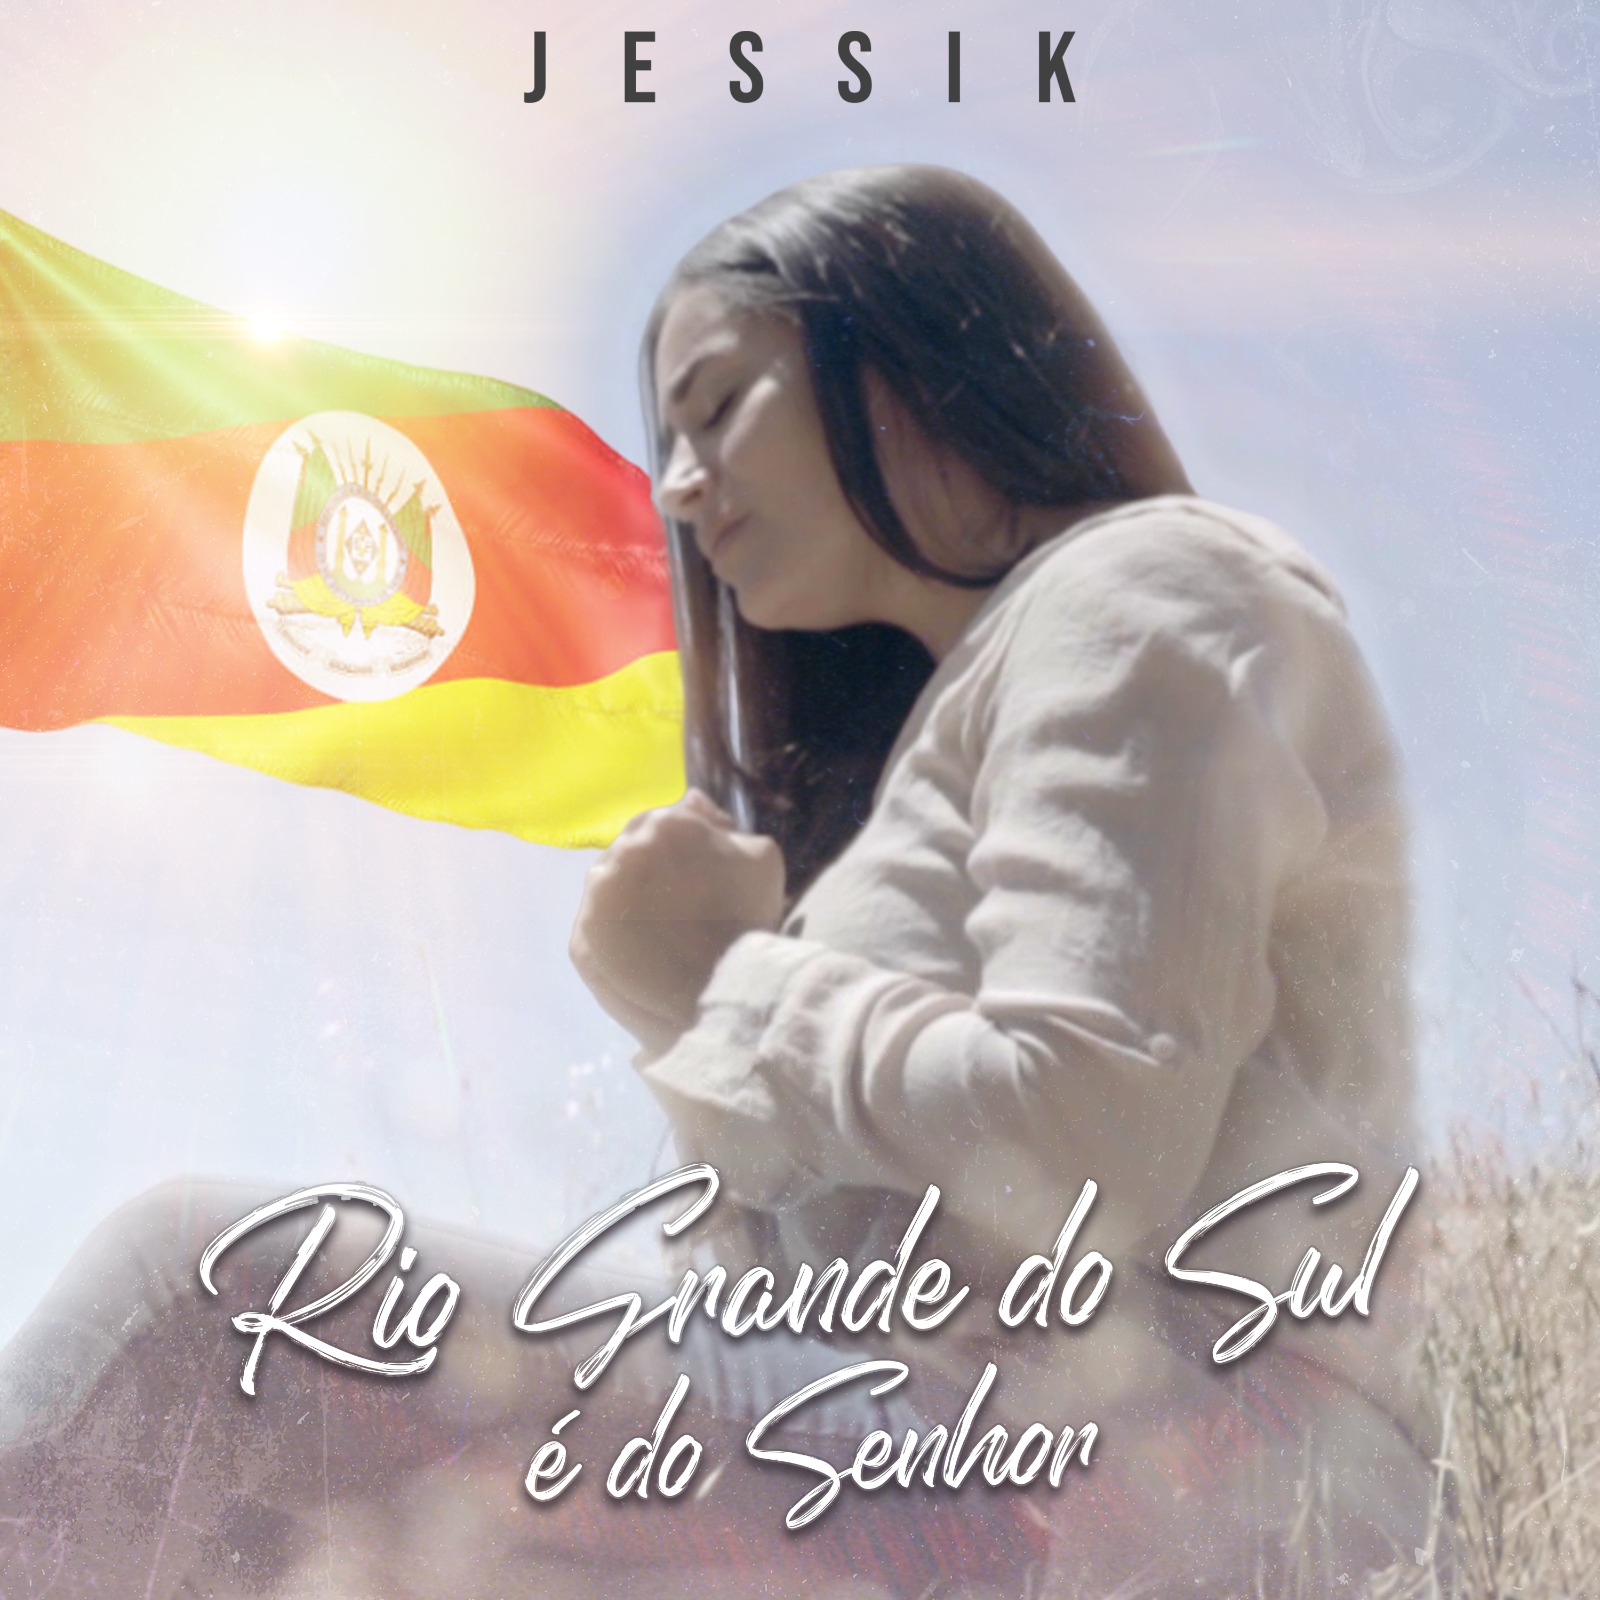 Jessik lança canção com mensagem de consolo ao Rio Grande do Sul